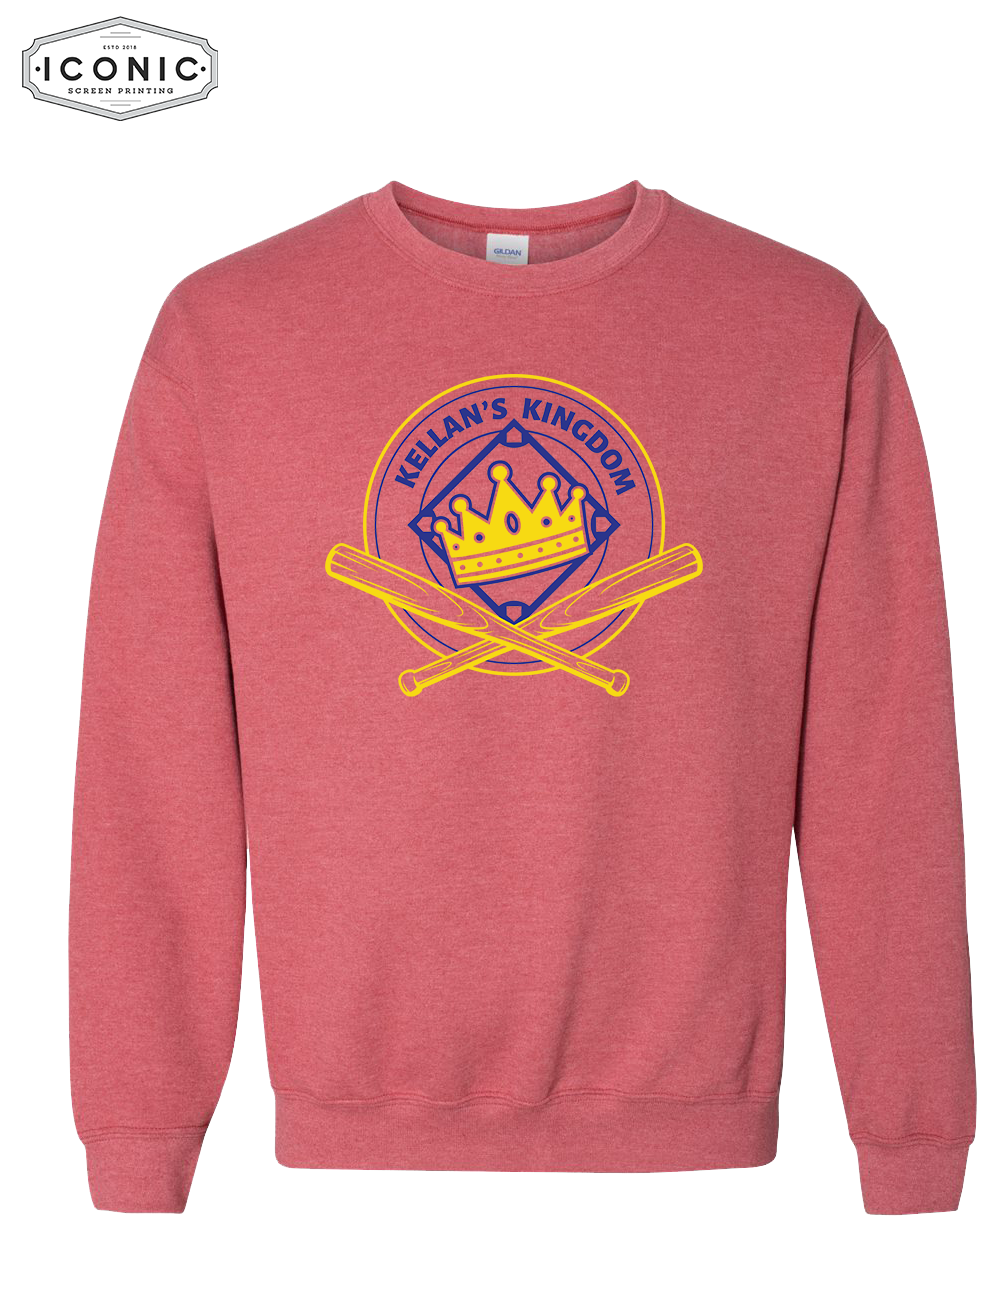 Kellan's Crown - Heavy Blend Sweatshirt